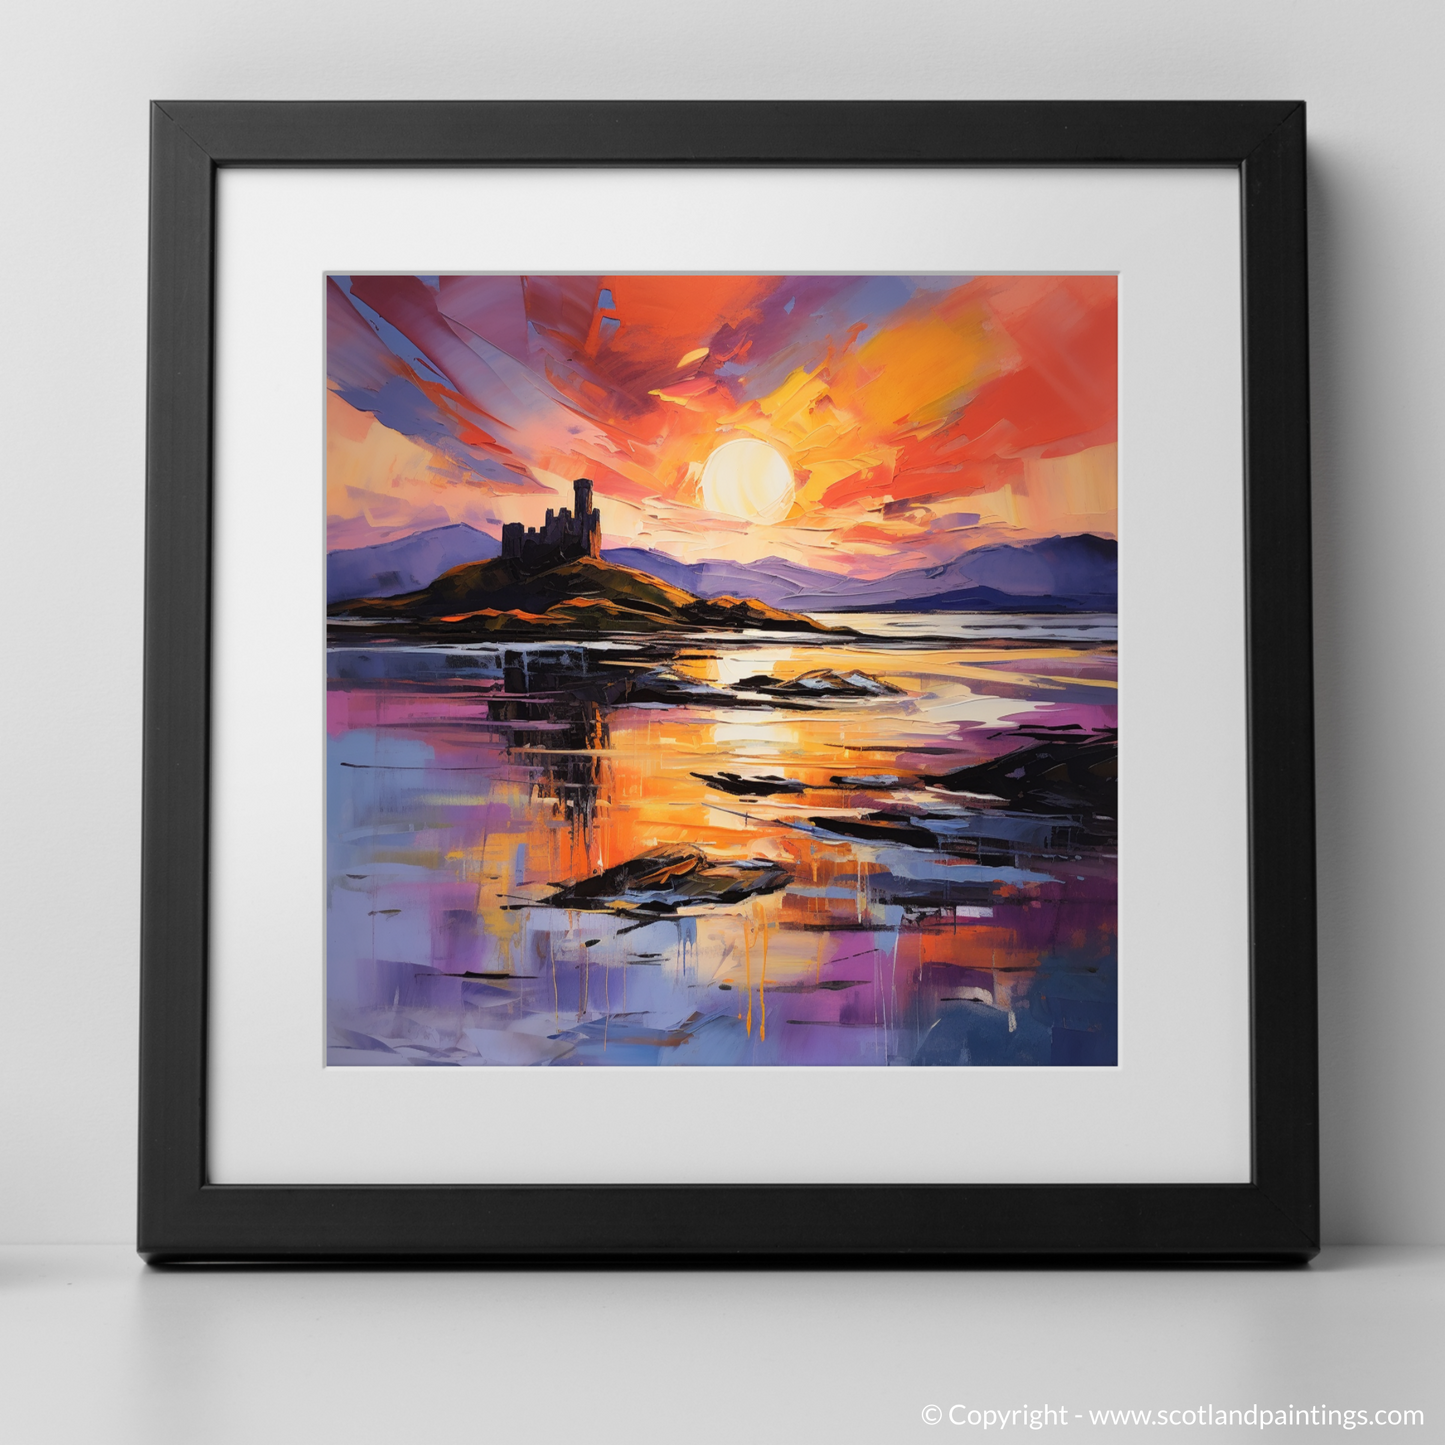 Art Print of Castle Stalker Bay at sunset with a black frame